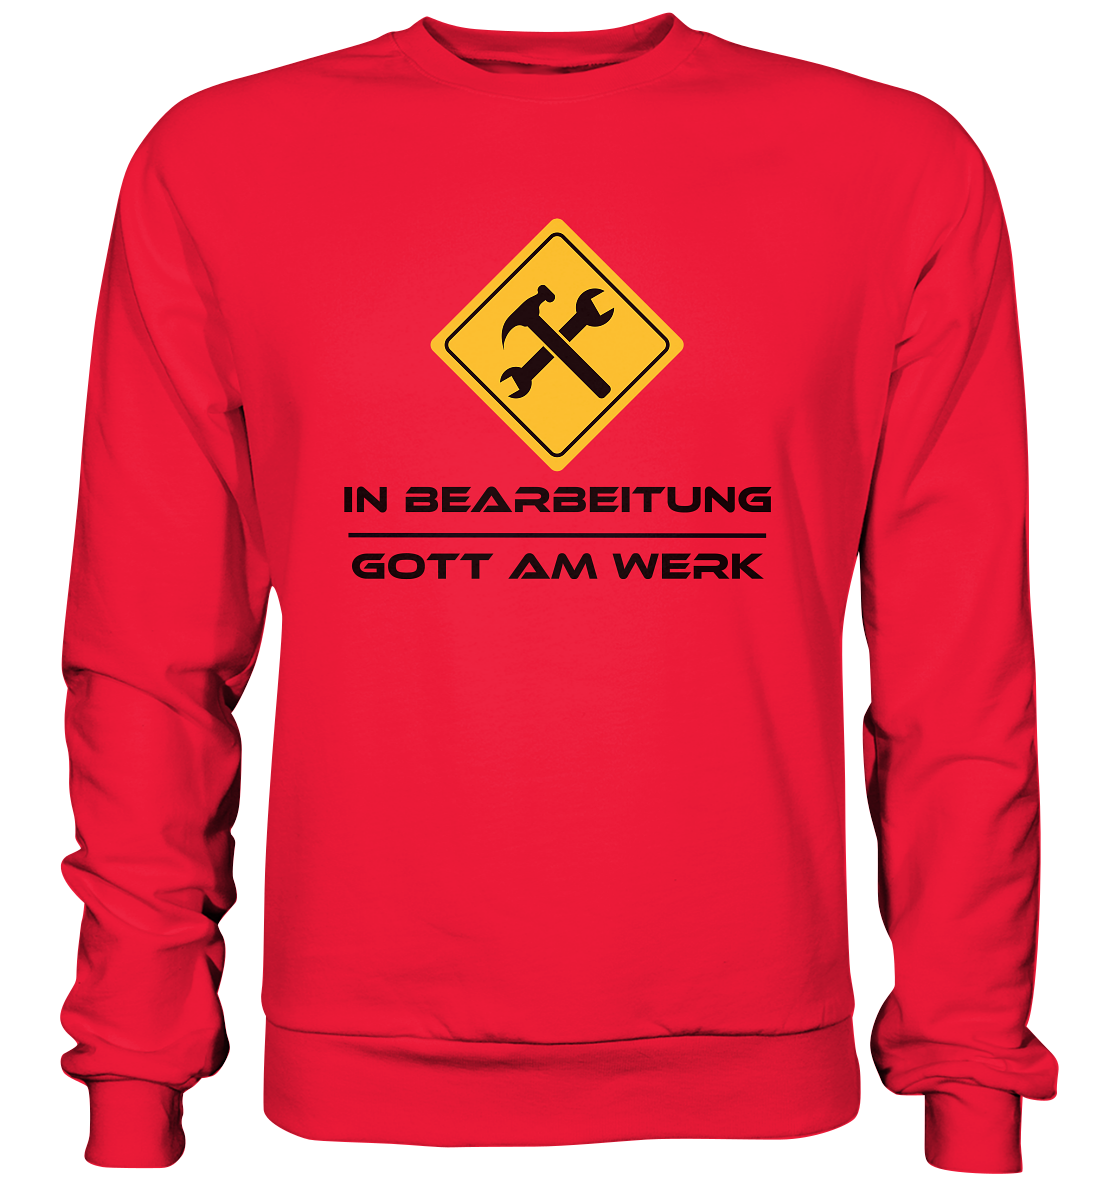 In Bearbeitung - Gott am Werk - Premium Sweatshirt